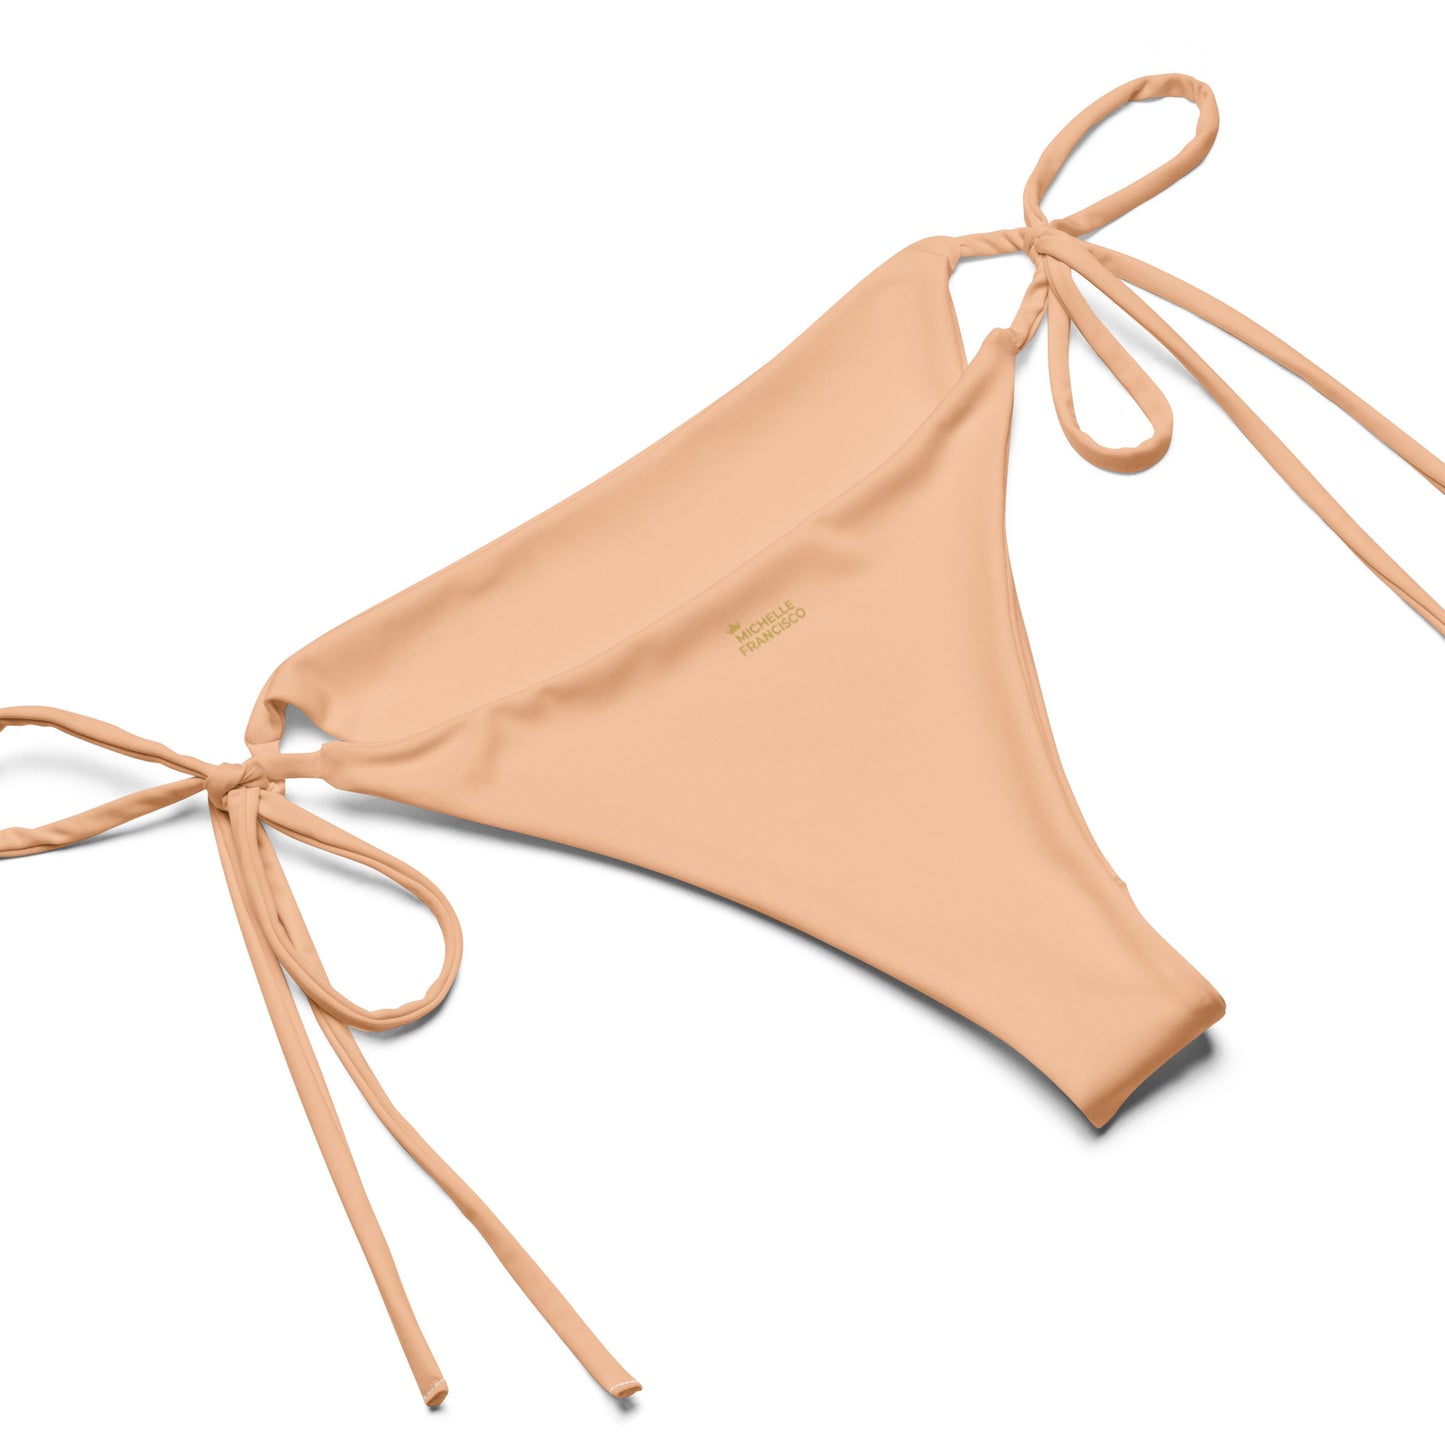 Peach String Bikini